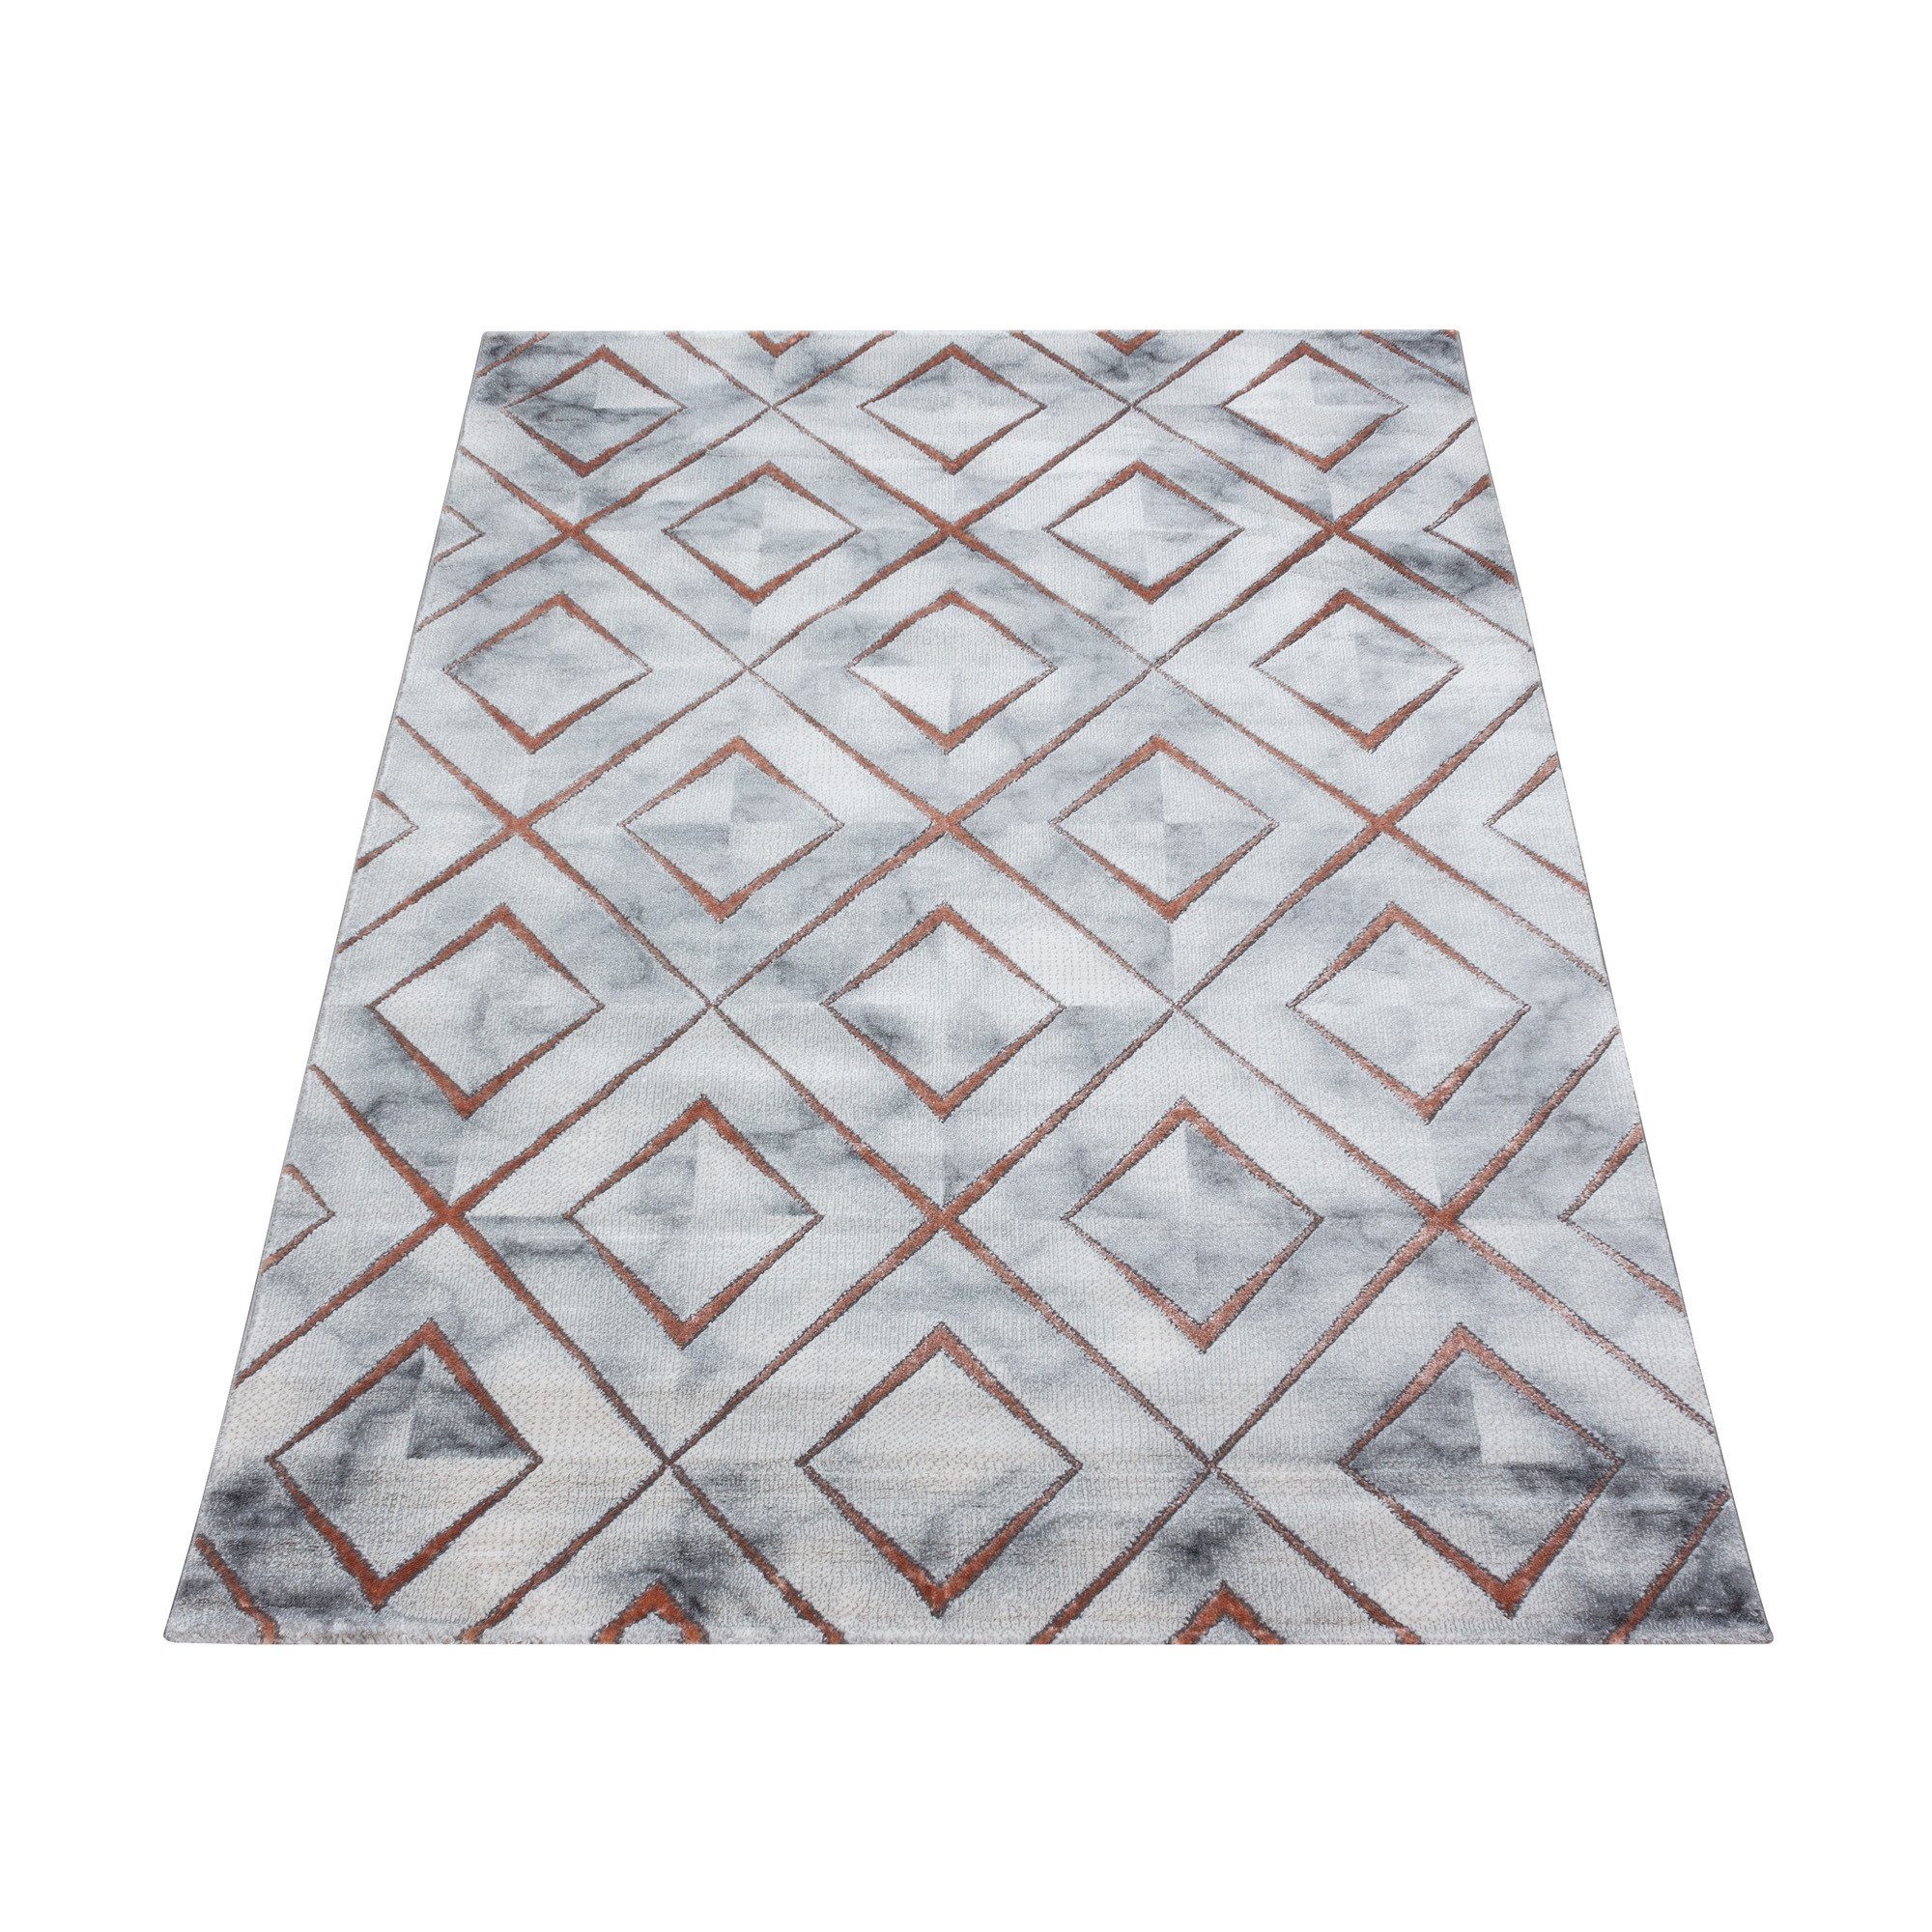 Muster, Flachflorteppich Bronze Kurzflorteppich Wohnzimmer Marmoroptik Miovani Designteppich